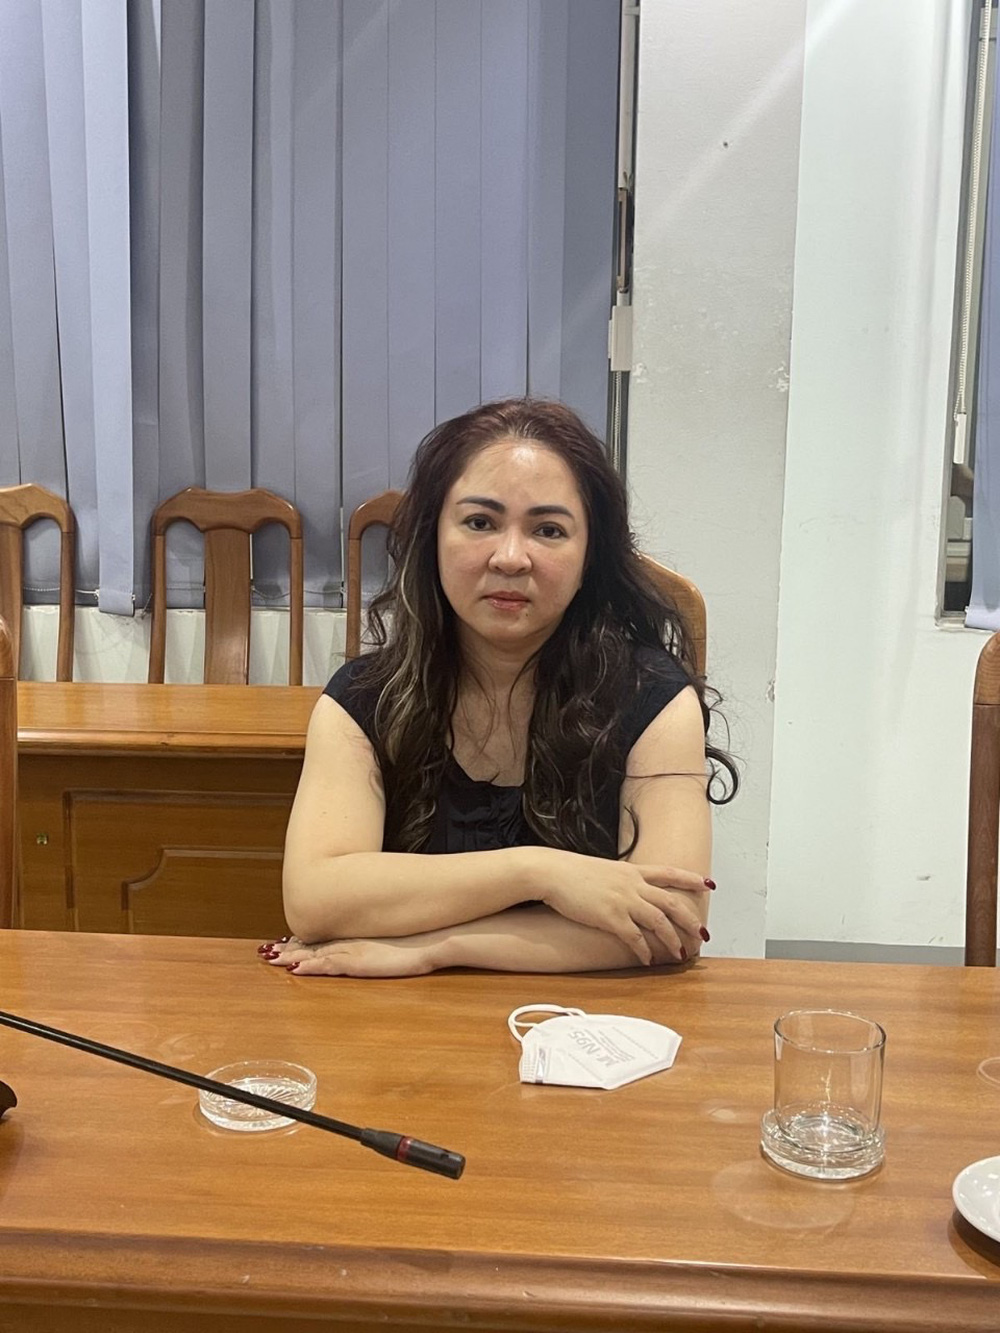 Công an TP.HCM thông tin về kết quả điều tra liên quan vụ bắt bà Nguyễn Phương Hằng